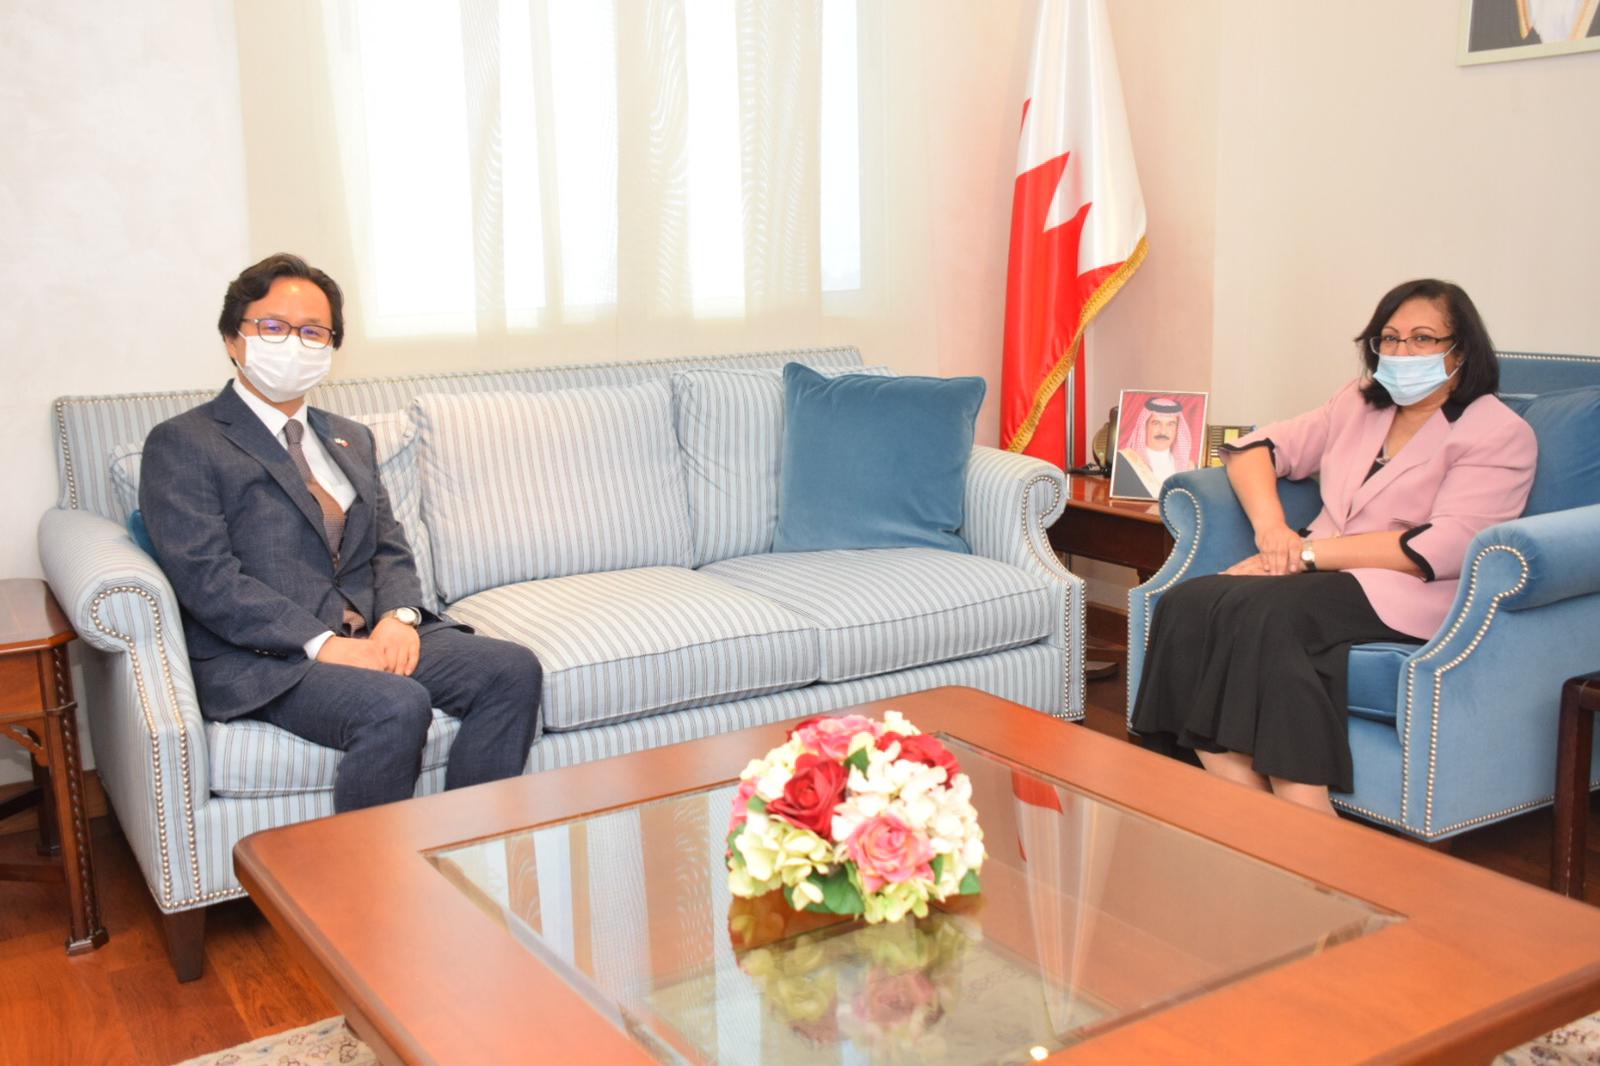 وزيرة الصحة تبحث مع سفير جمهورية كوريا الجنوبية تعزيز التعاون الصحي بين البلدين